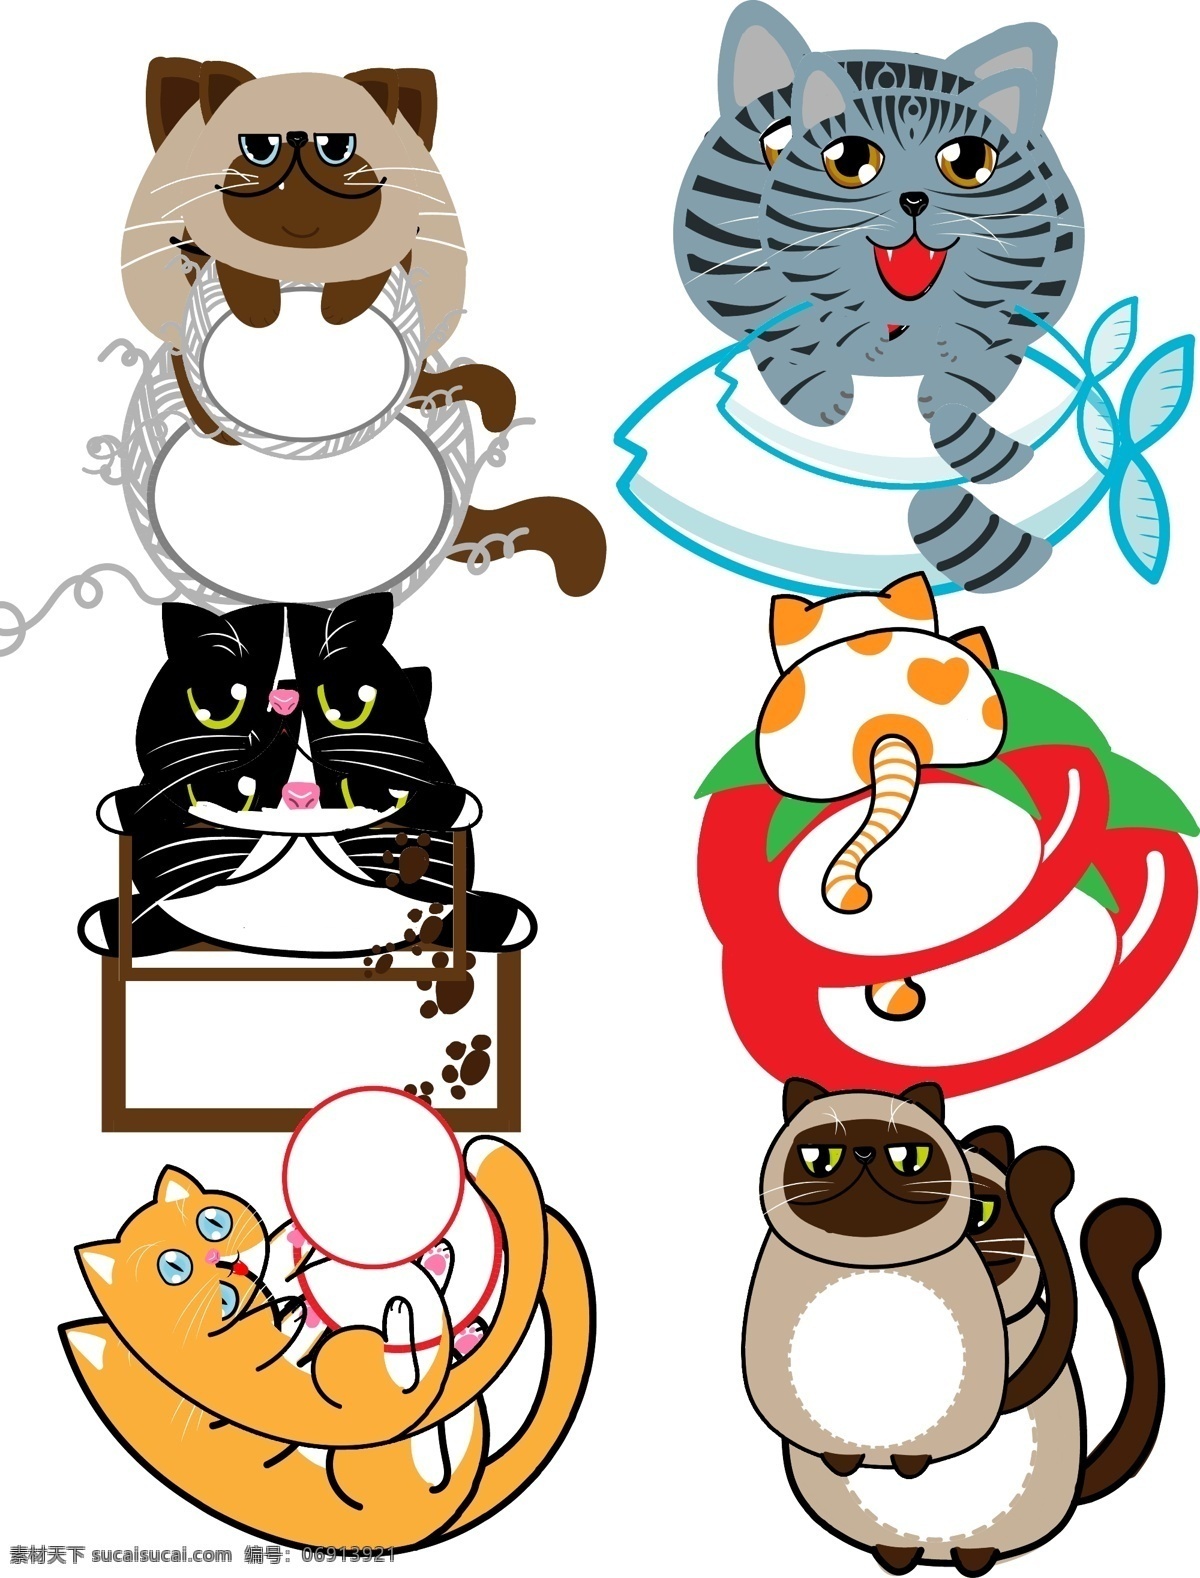 矢量 手绘 猫咪 边框 大 合集 商用 便签 可爱 卡通 萌猫 动物冰箱贴 动物手账